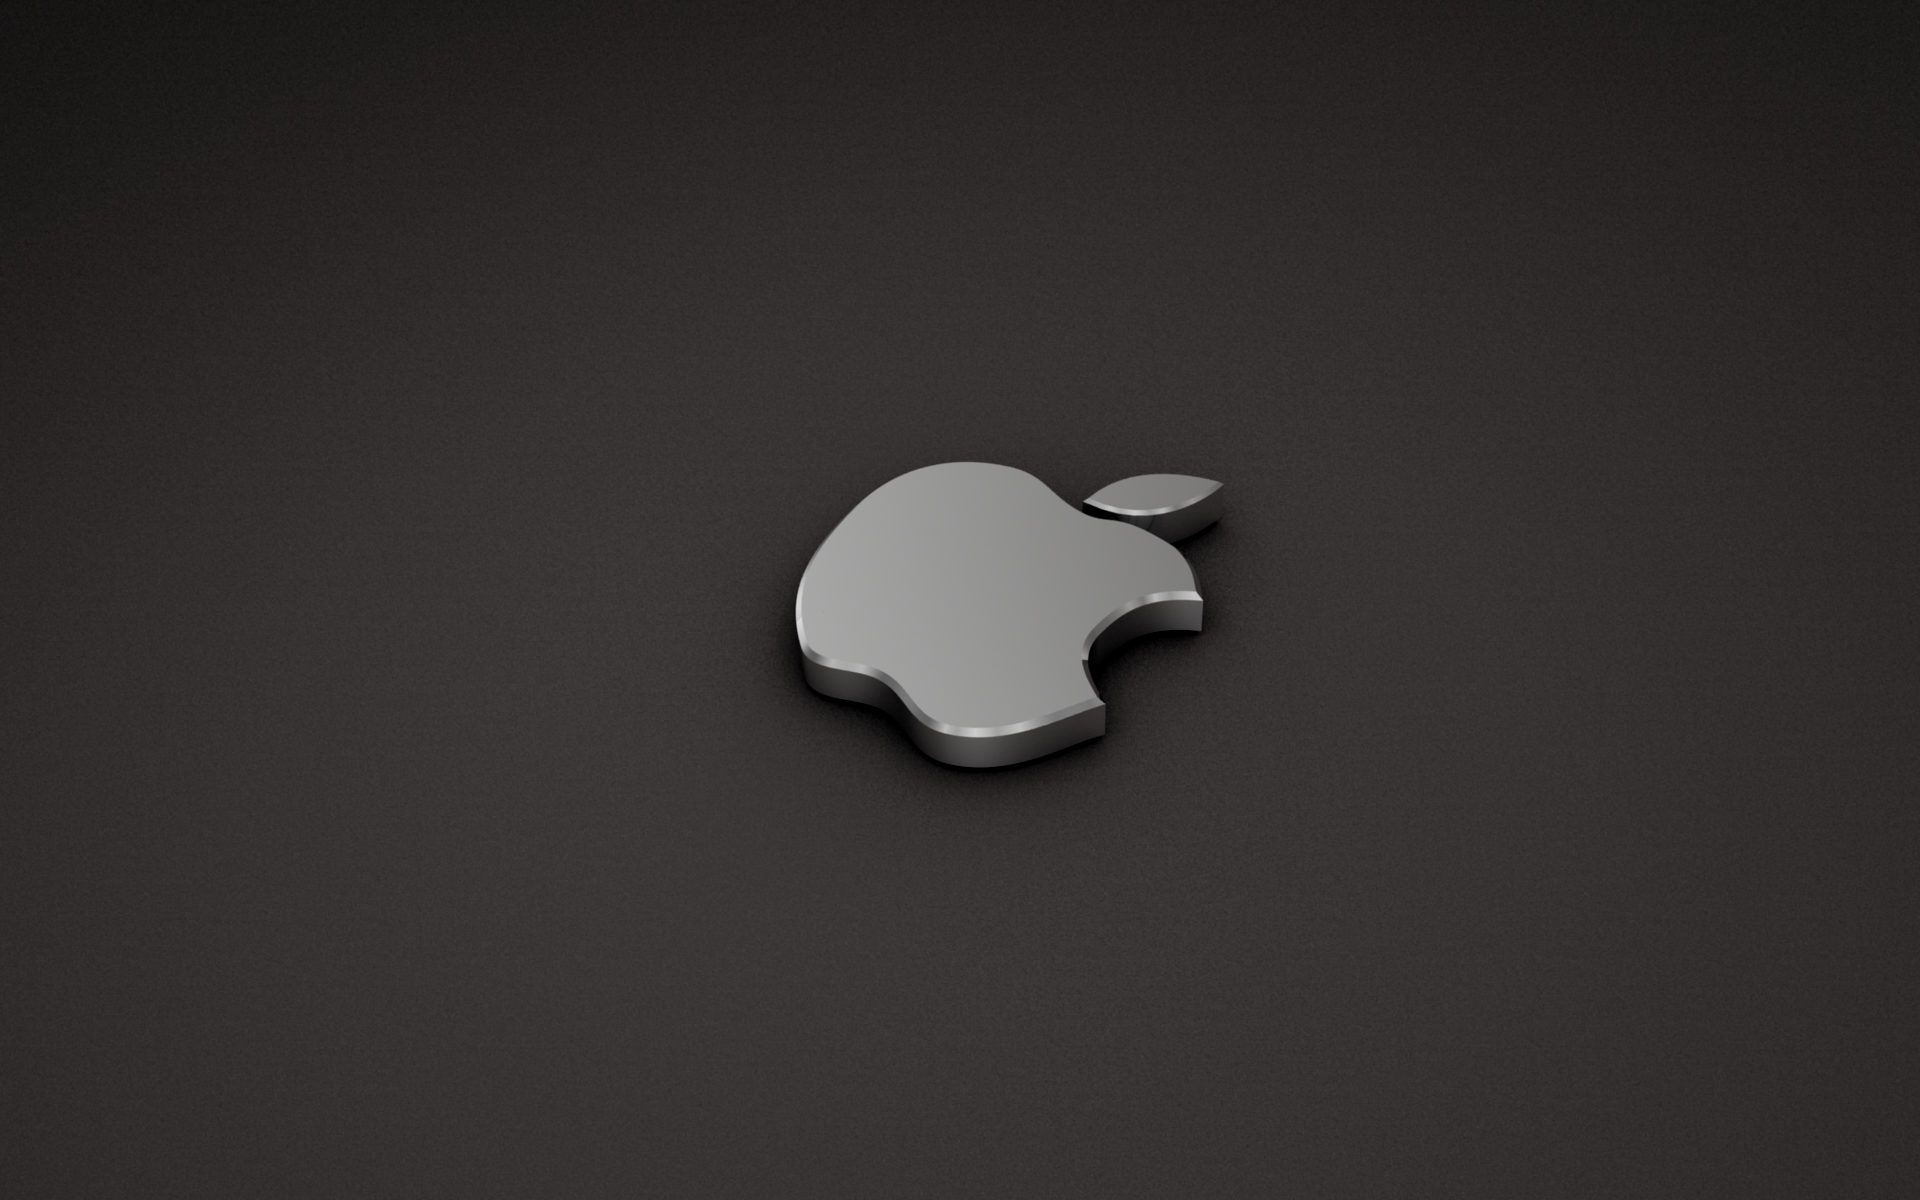 White Apple Logo - wallpaper.